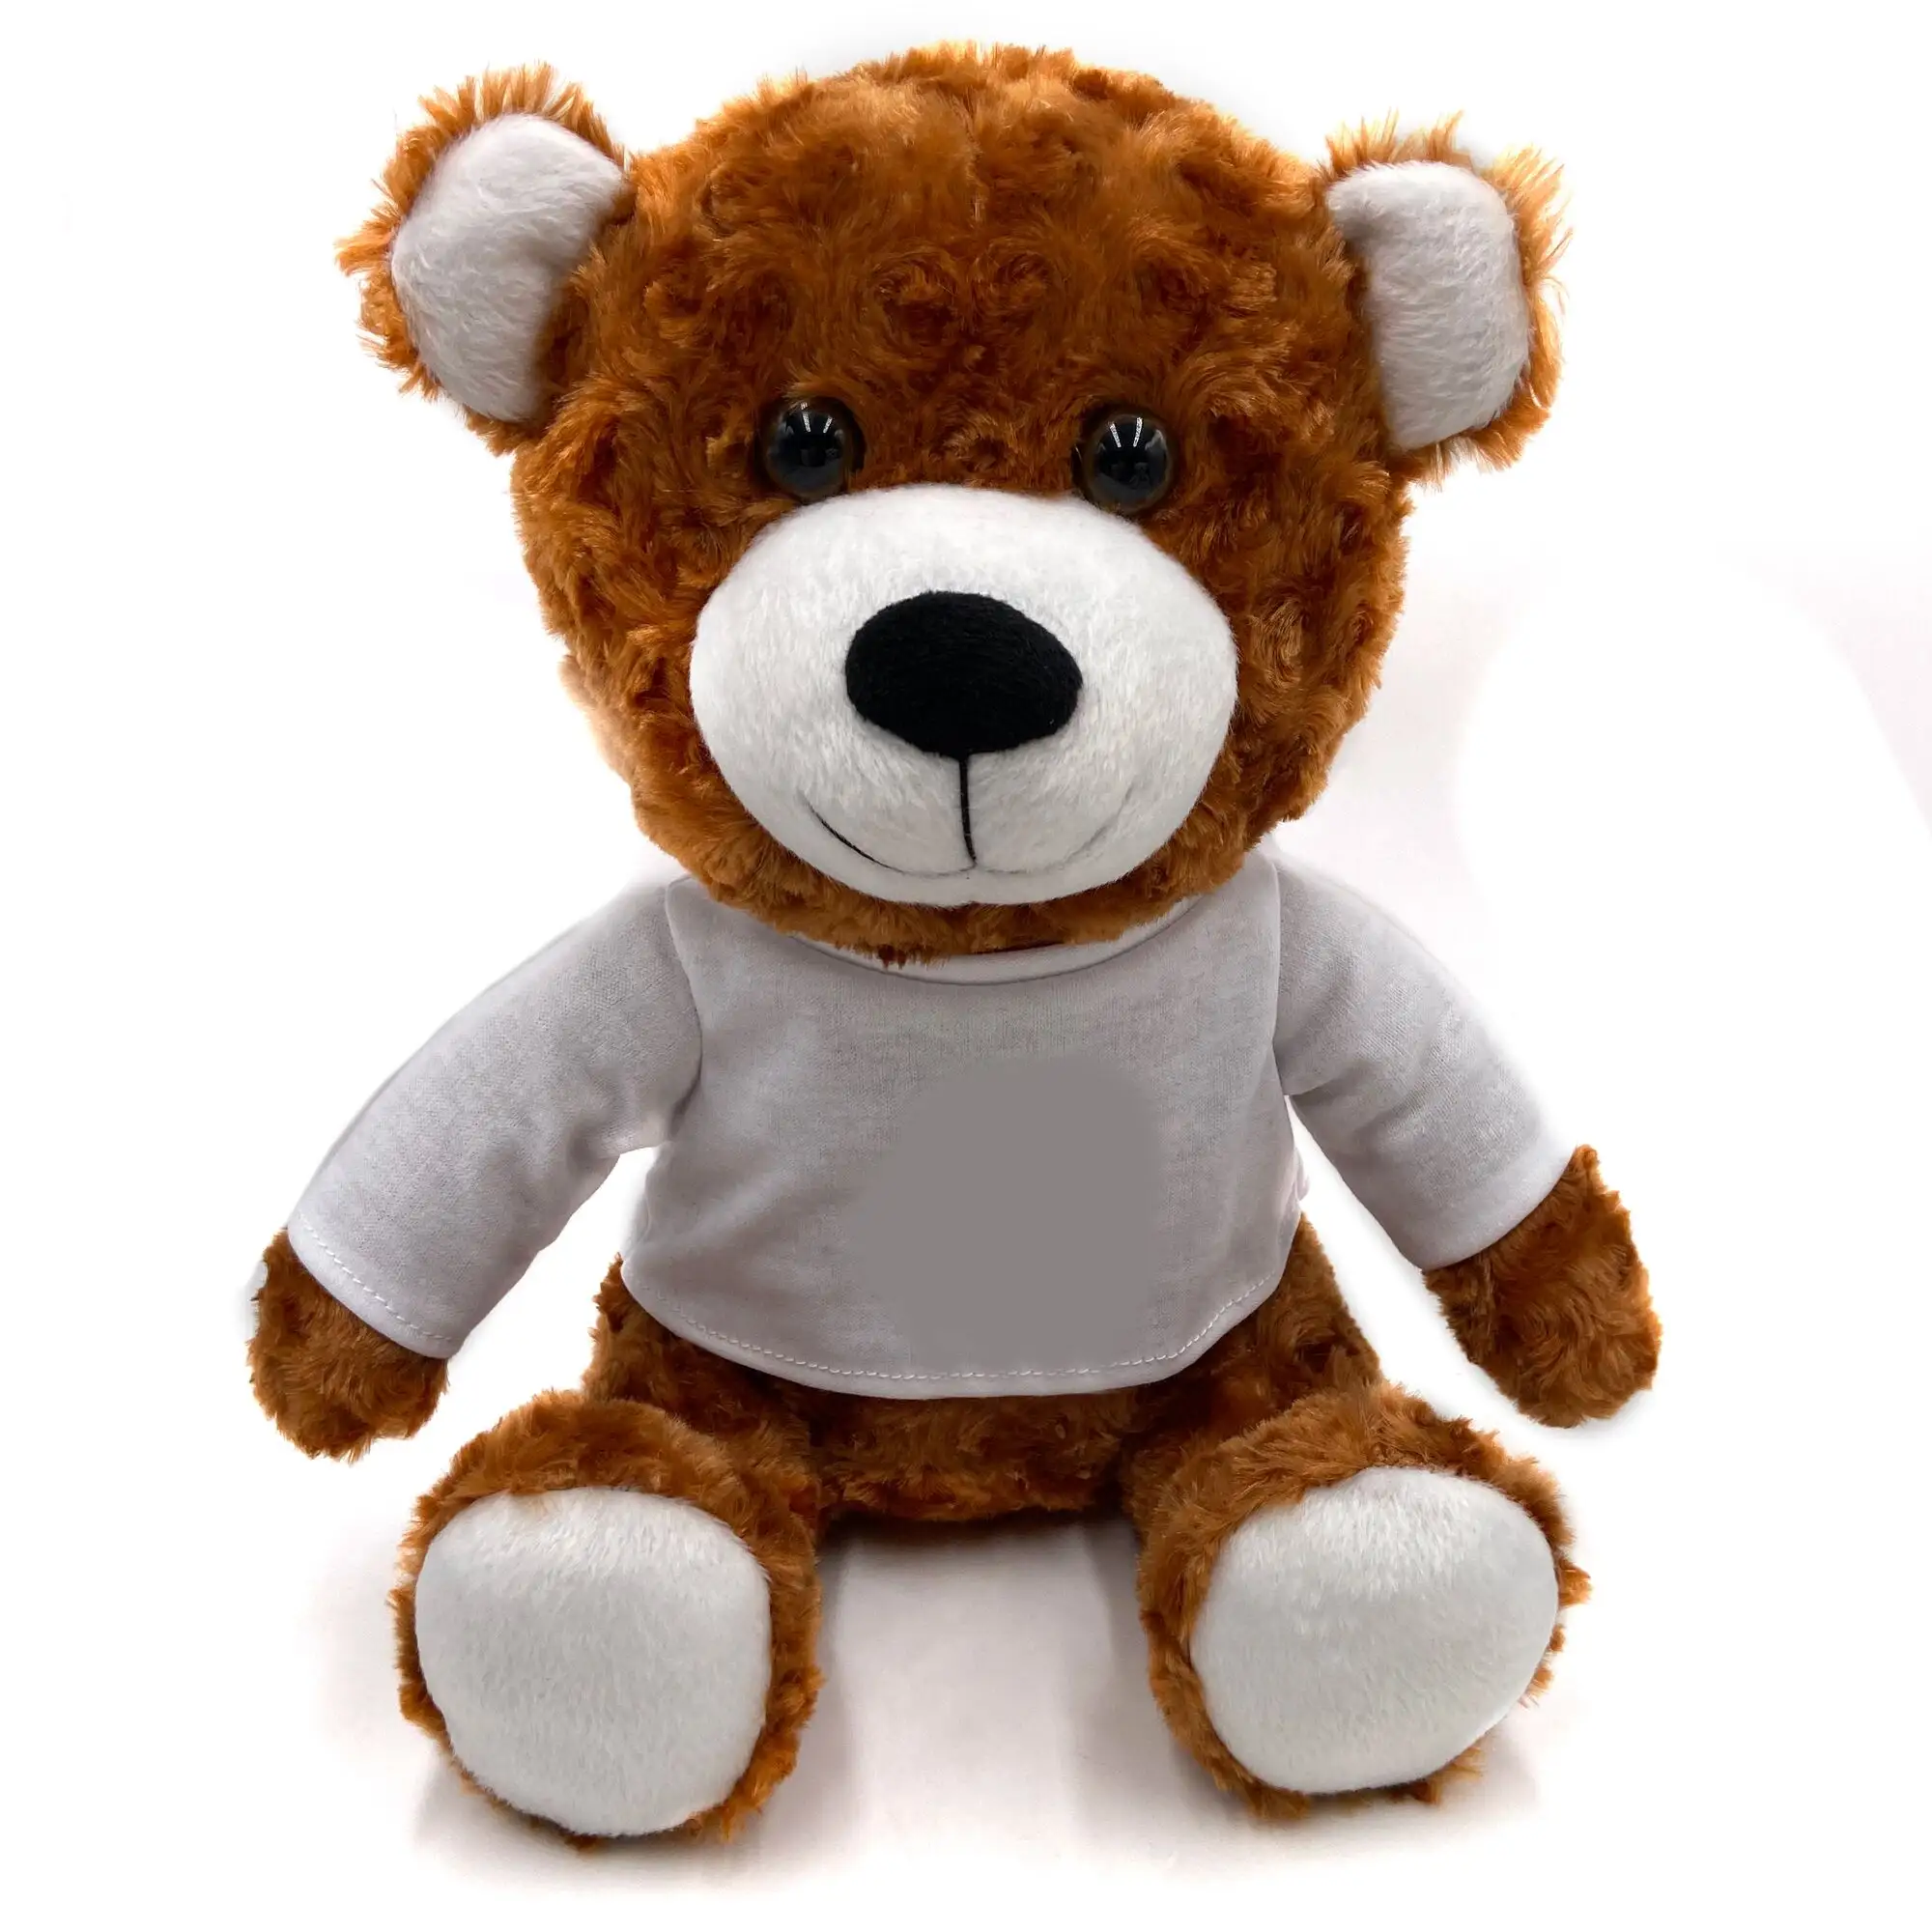 2021 Best Selling USA UK Europe AU Speaker Soft Stuffed Animal Stylish Designs Wholesale New Style Functional Bear Toy